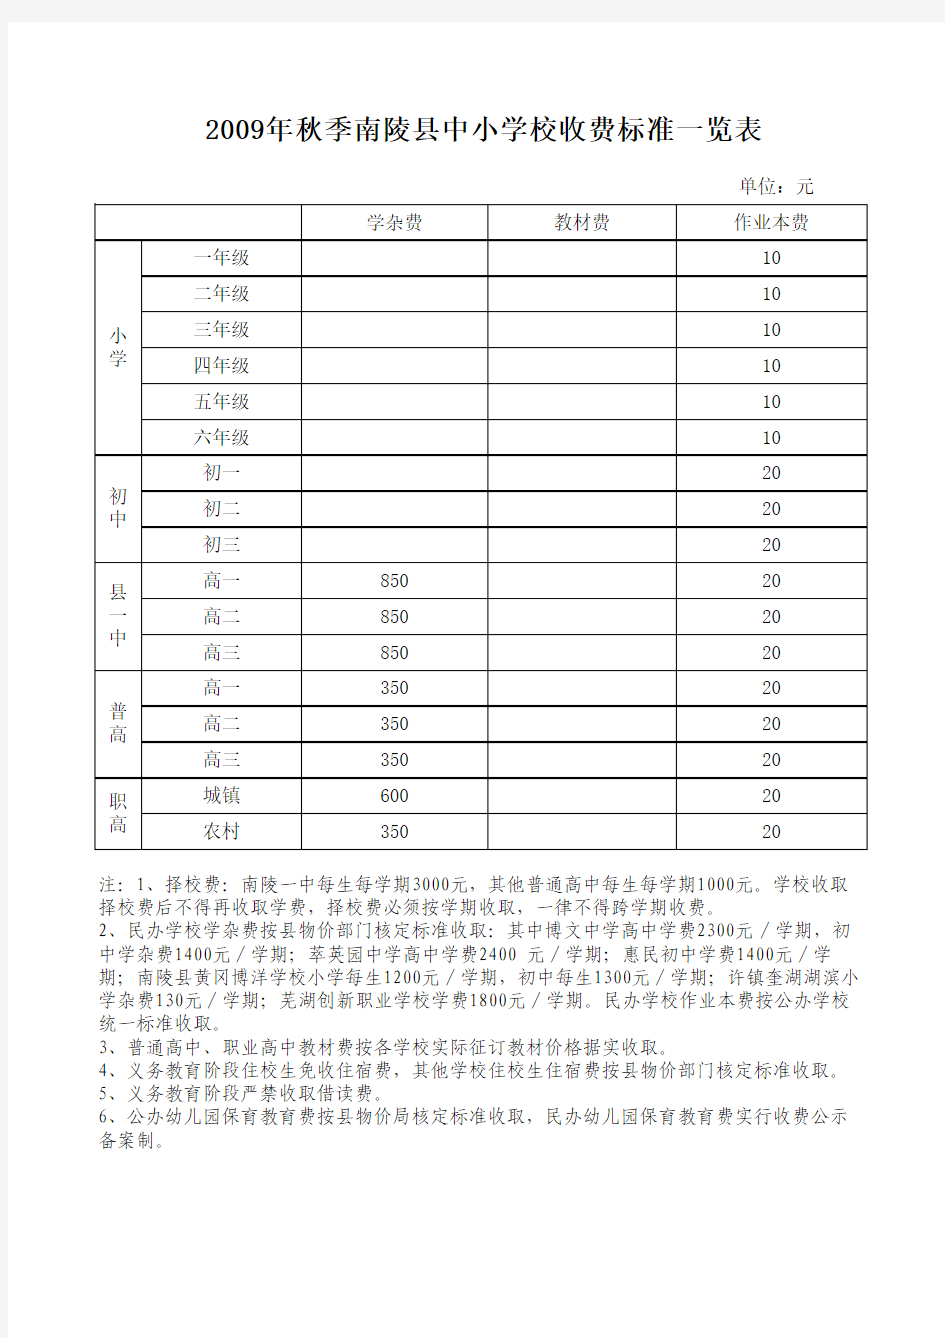 2009年秋季南陵县中小学校收费标准一览表